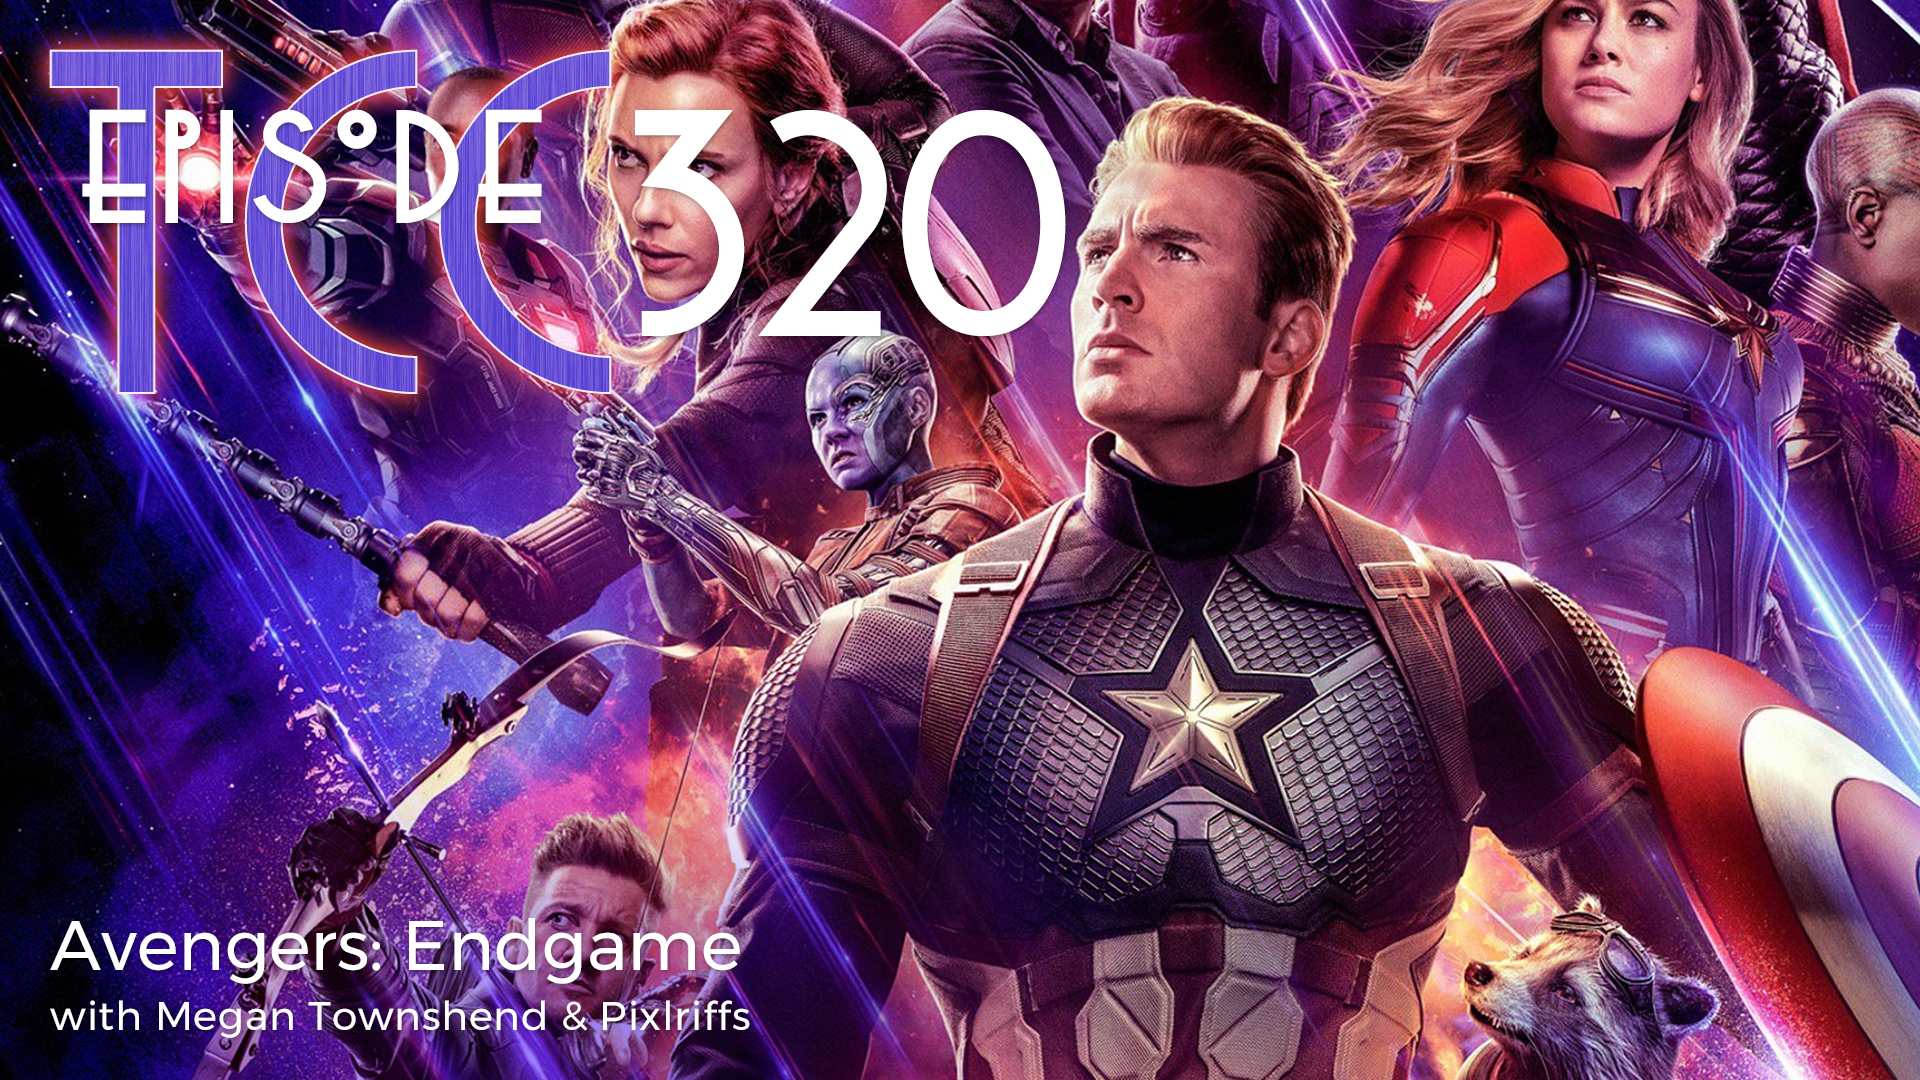 The Citadel Cafe 320: Avengers Endgame